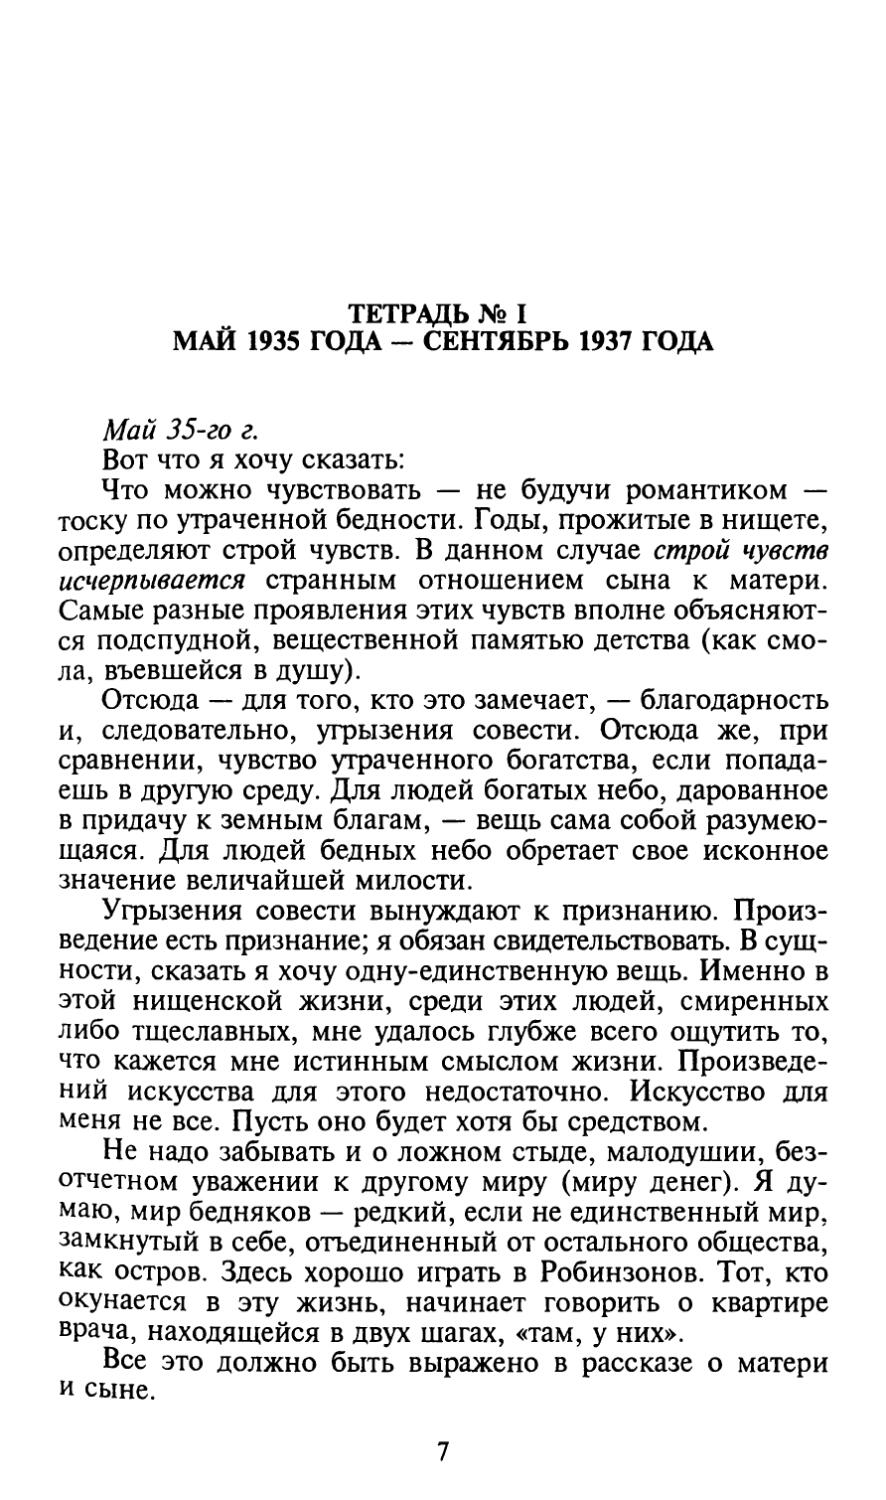 Тетрадь № I. Май 1935 года - сентябрь 1937 года